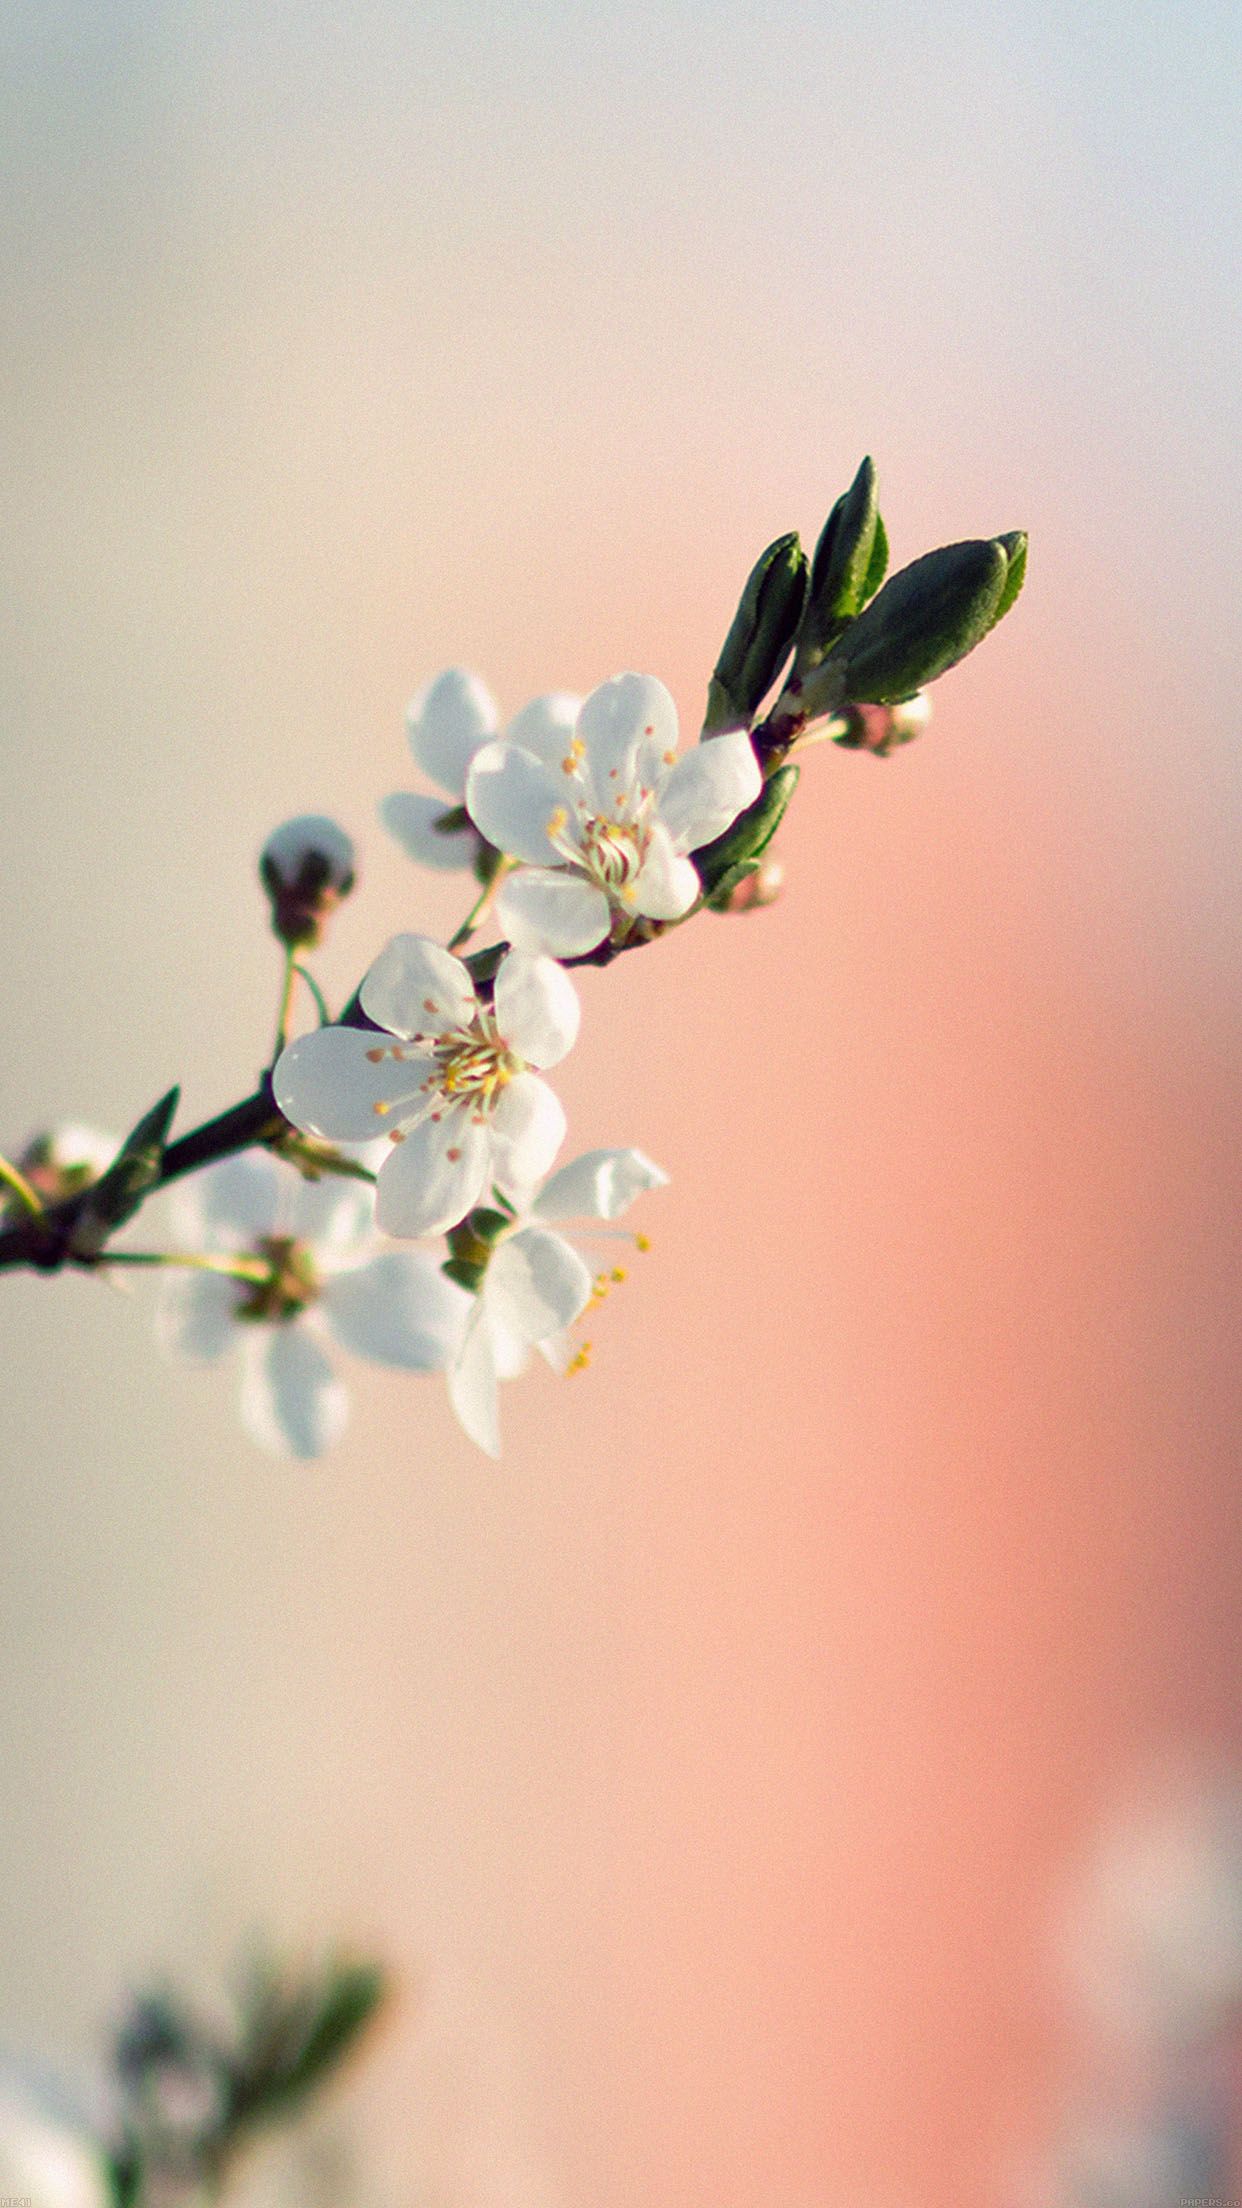 شکوفه های قشنگ بهار به رنگ سفید برای پروفایل تلگرام